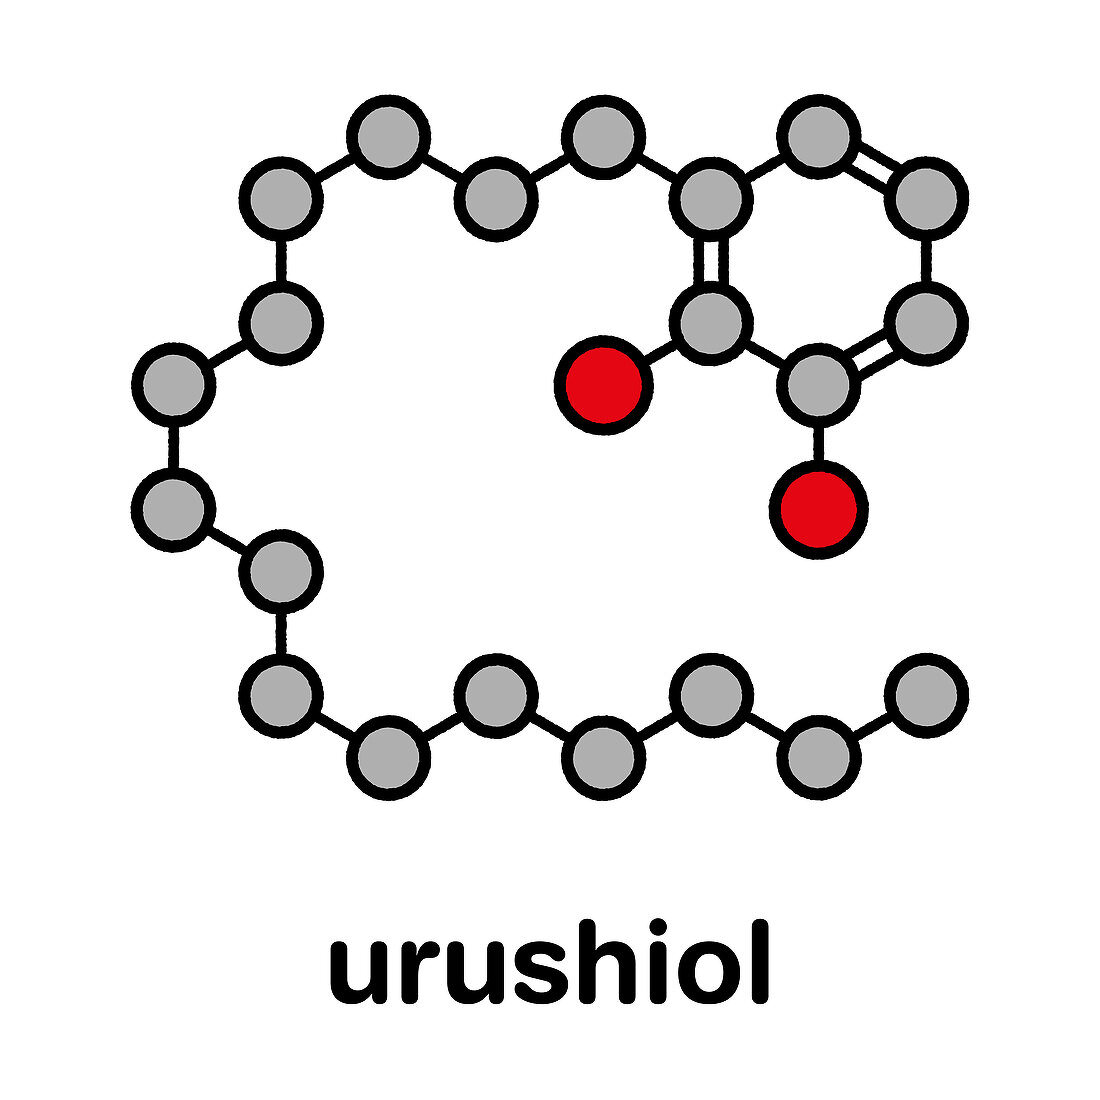 Urushiol poison ivy allergen molecule, illustration